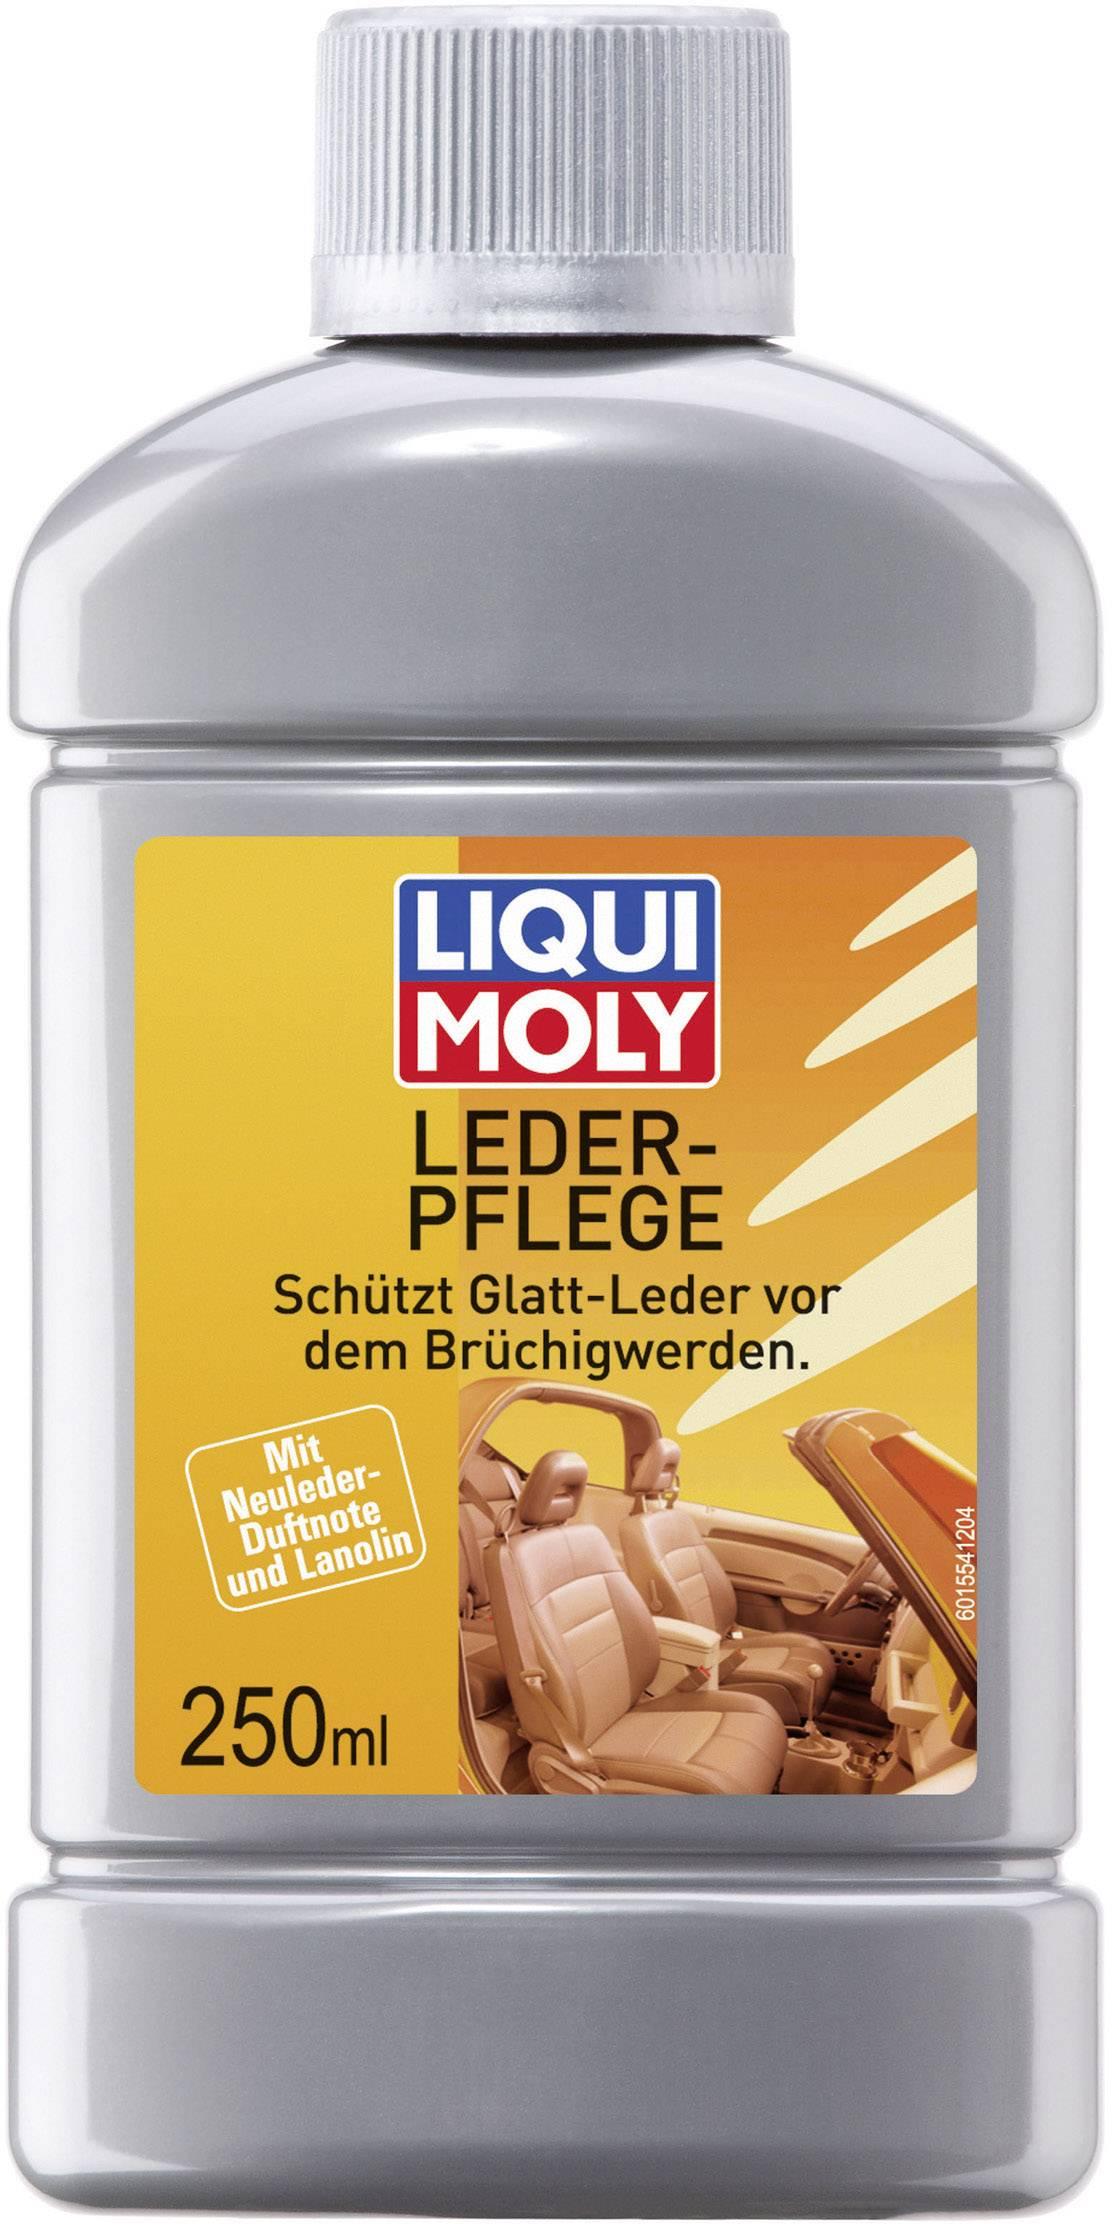 LIQUI MOLY Losion za čišćenje i održavanje kože Losion Lederpflege 250ml